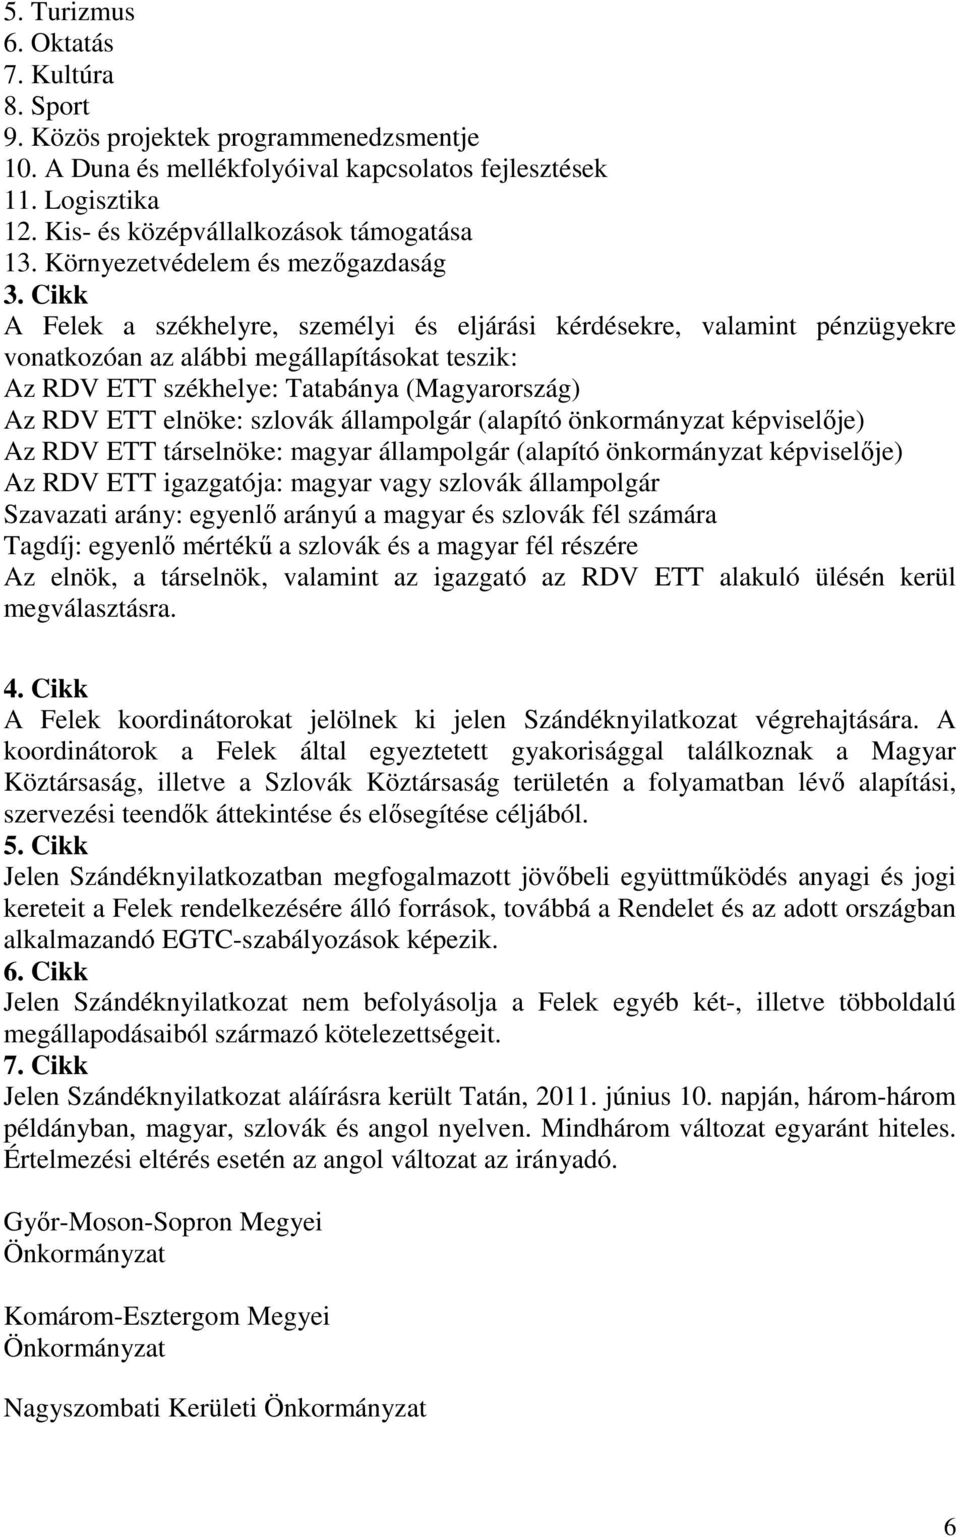 Cikk A Felek a székhelyre, személyi és eljárási kérdésekre, valamint pénzügyekre vonatkozóan az alábbi megállapításokat teszik: Az RDV ETT székhelye: Tatabánya (Magyarország) Az RDV ETT elnöke: